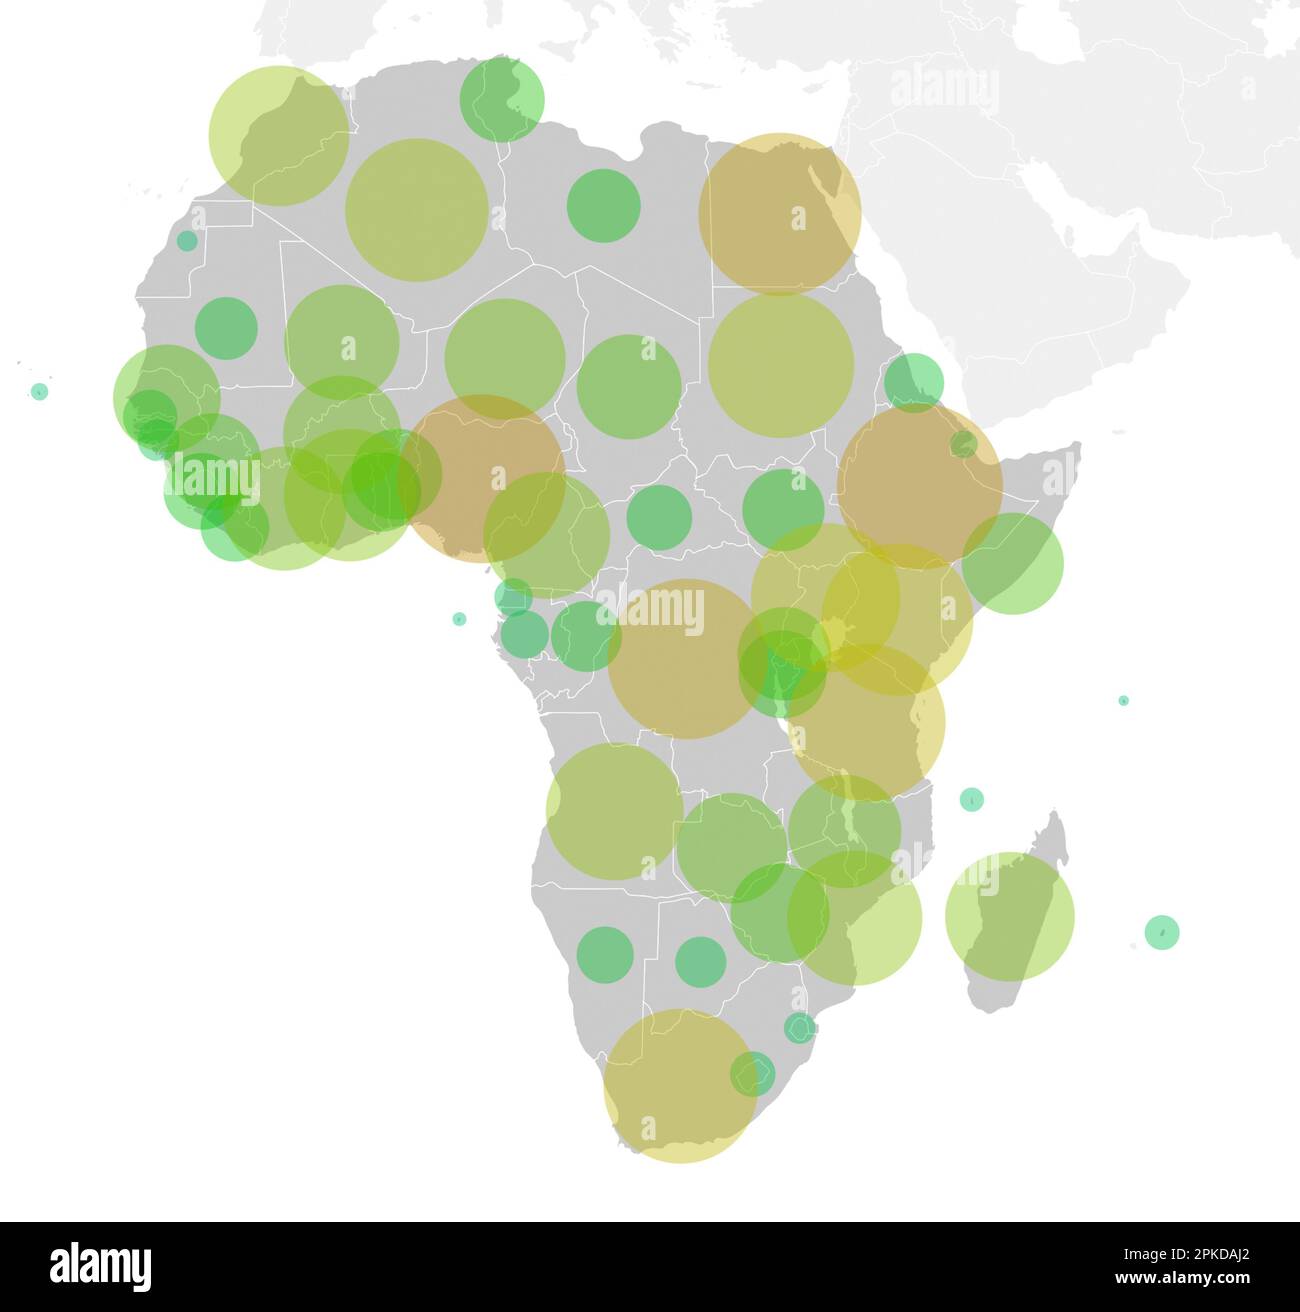 Karte des afrikanischen Kontinents mit grünen bis orangefarbenen Kreisen, die die Bevölkerung in jedem Land repräsentieren. Grafische Darstellung der Bevölkerung in afrikanischen Ländern. Stockfoto